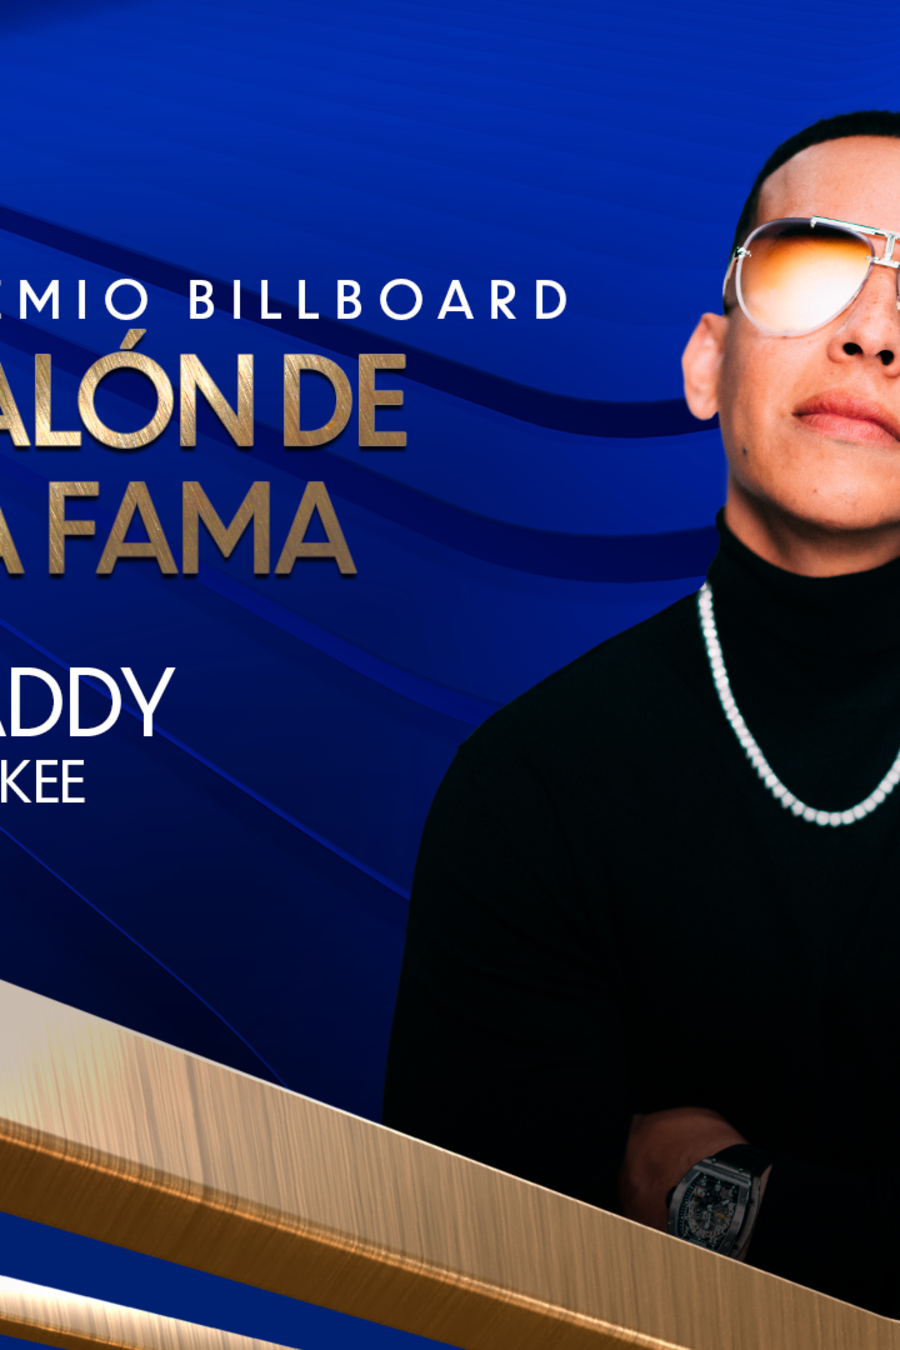 Daddy Yankee será honrado con el premio Billboard Salón de la Fama 